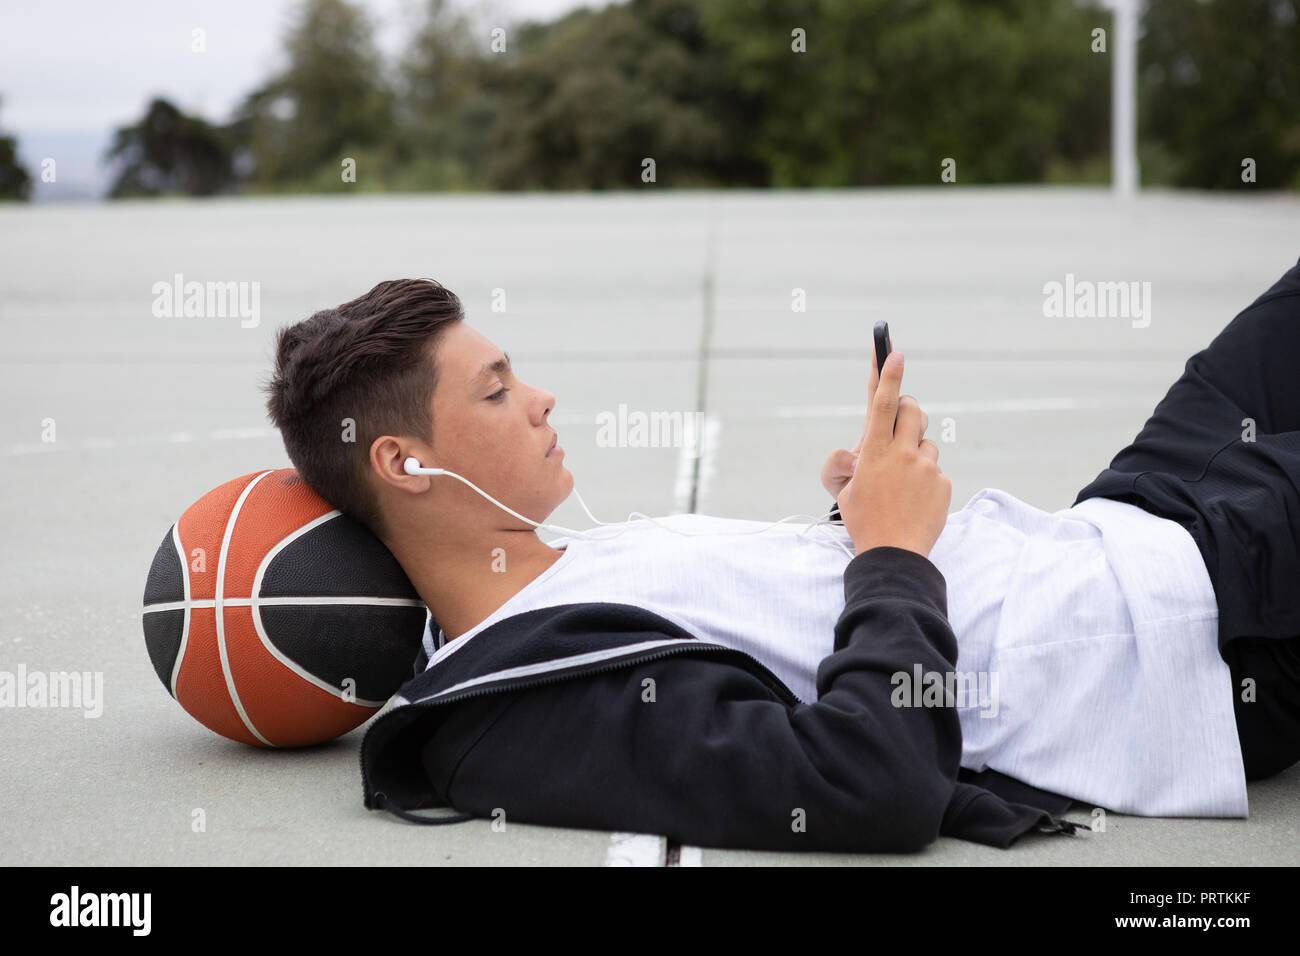 Joueur de basket-ball chez les hommes se trouvant sur un terrain de basket-ball looking at smartphone Banque D'Images